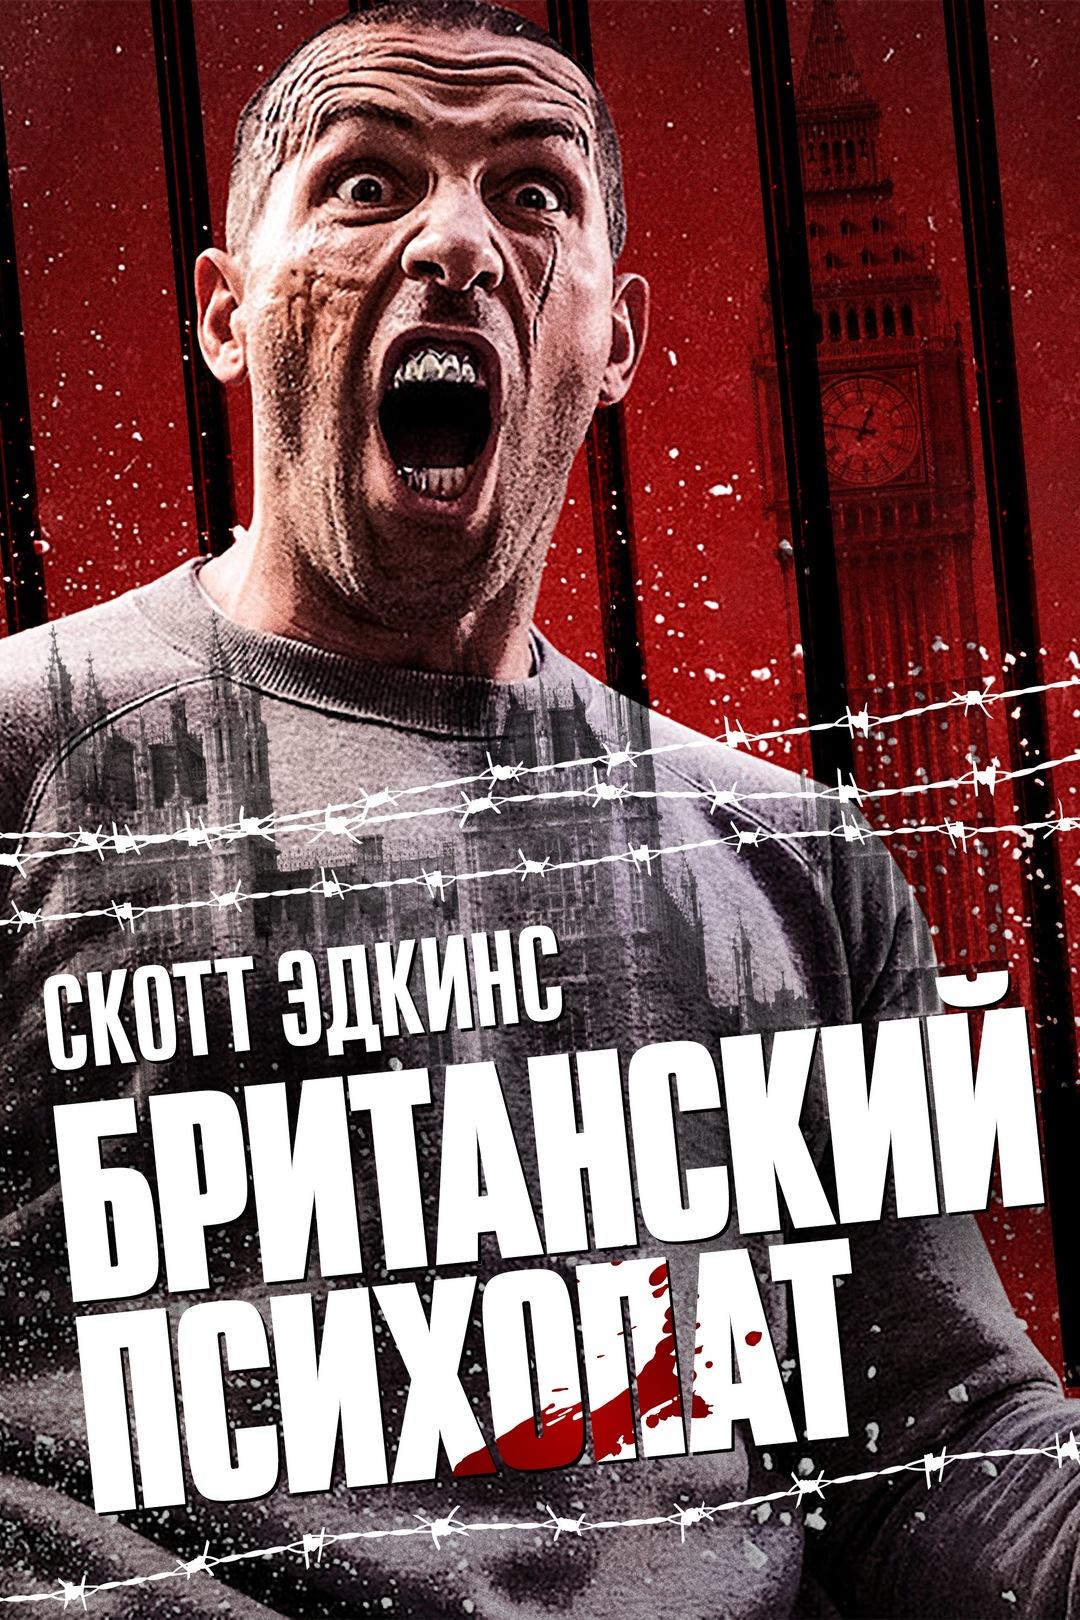 Постер фильма Британский психопат | Avengement